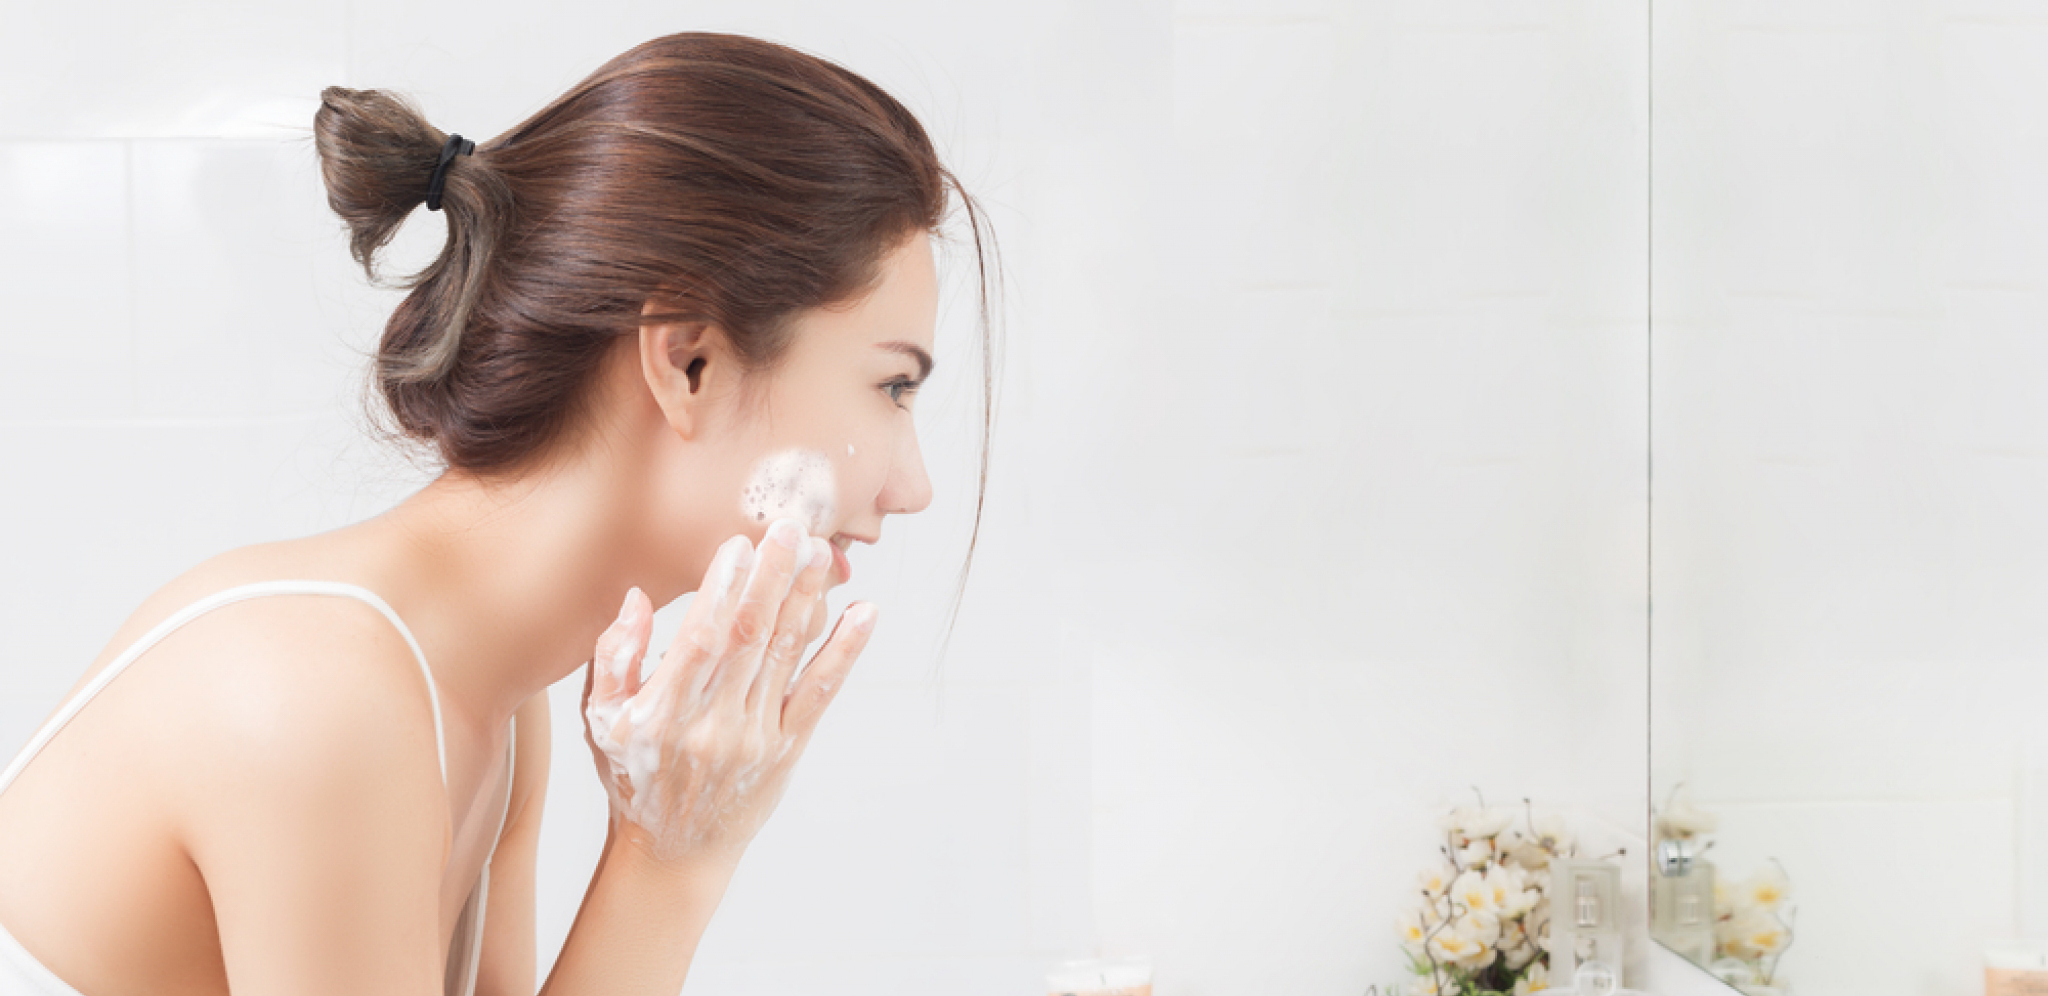 Protiv upalnih procesa na koži: Domaći sapun od sode bikarbone